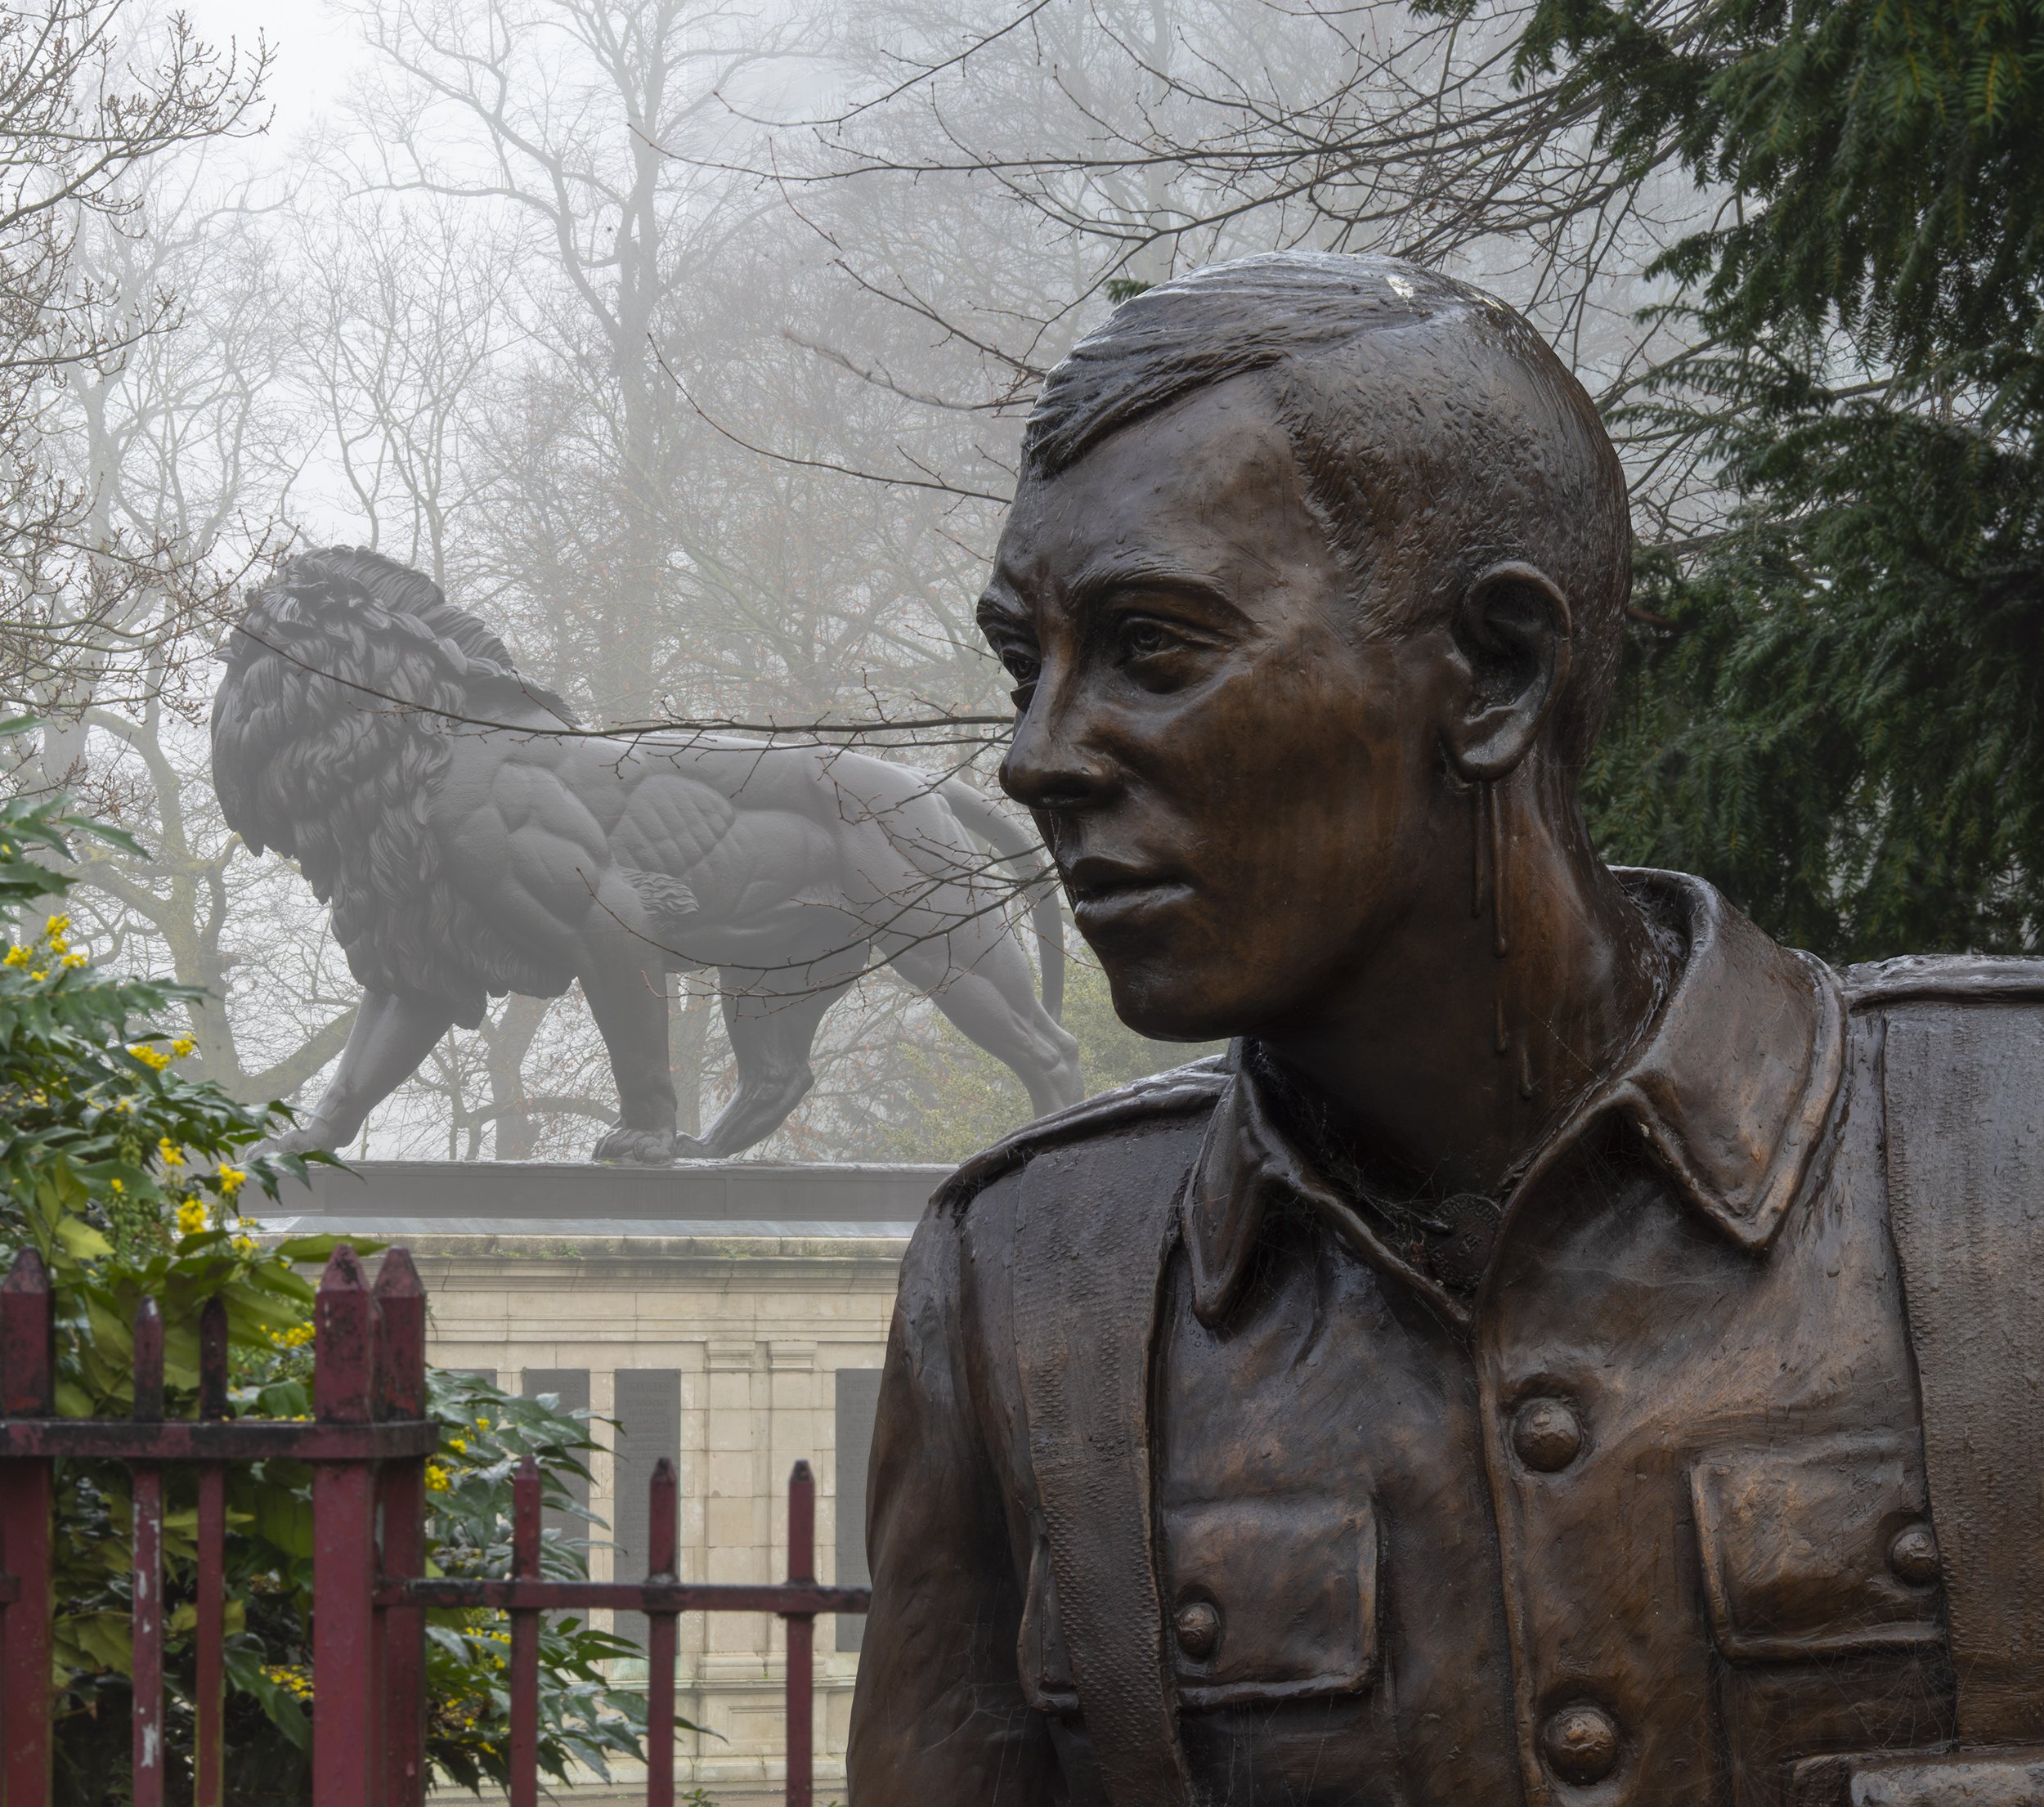 Trooper Potts & Maiwand Lion statues